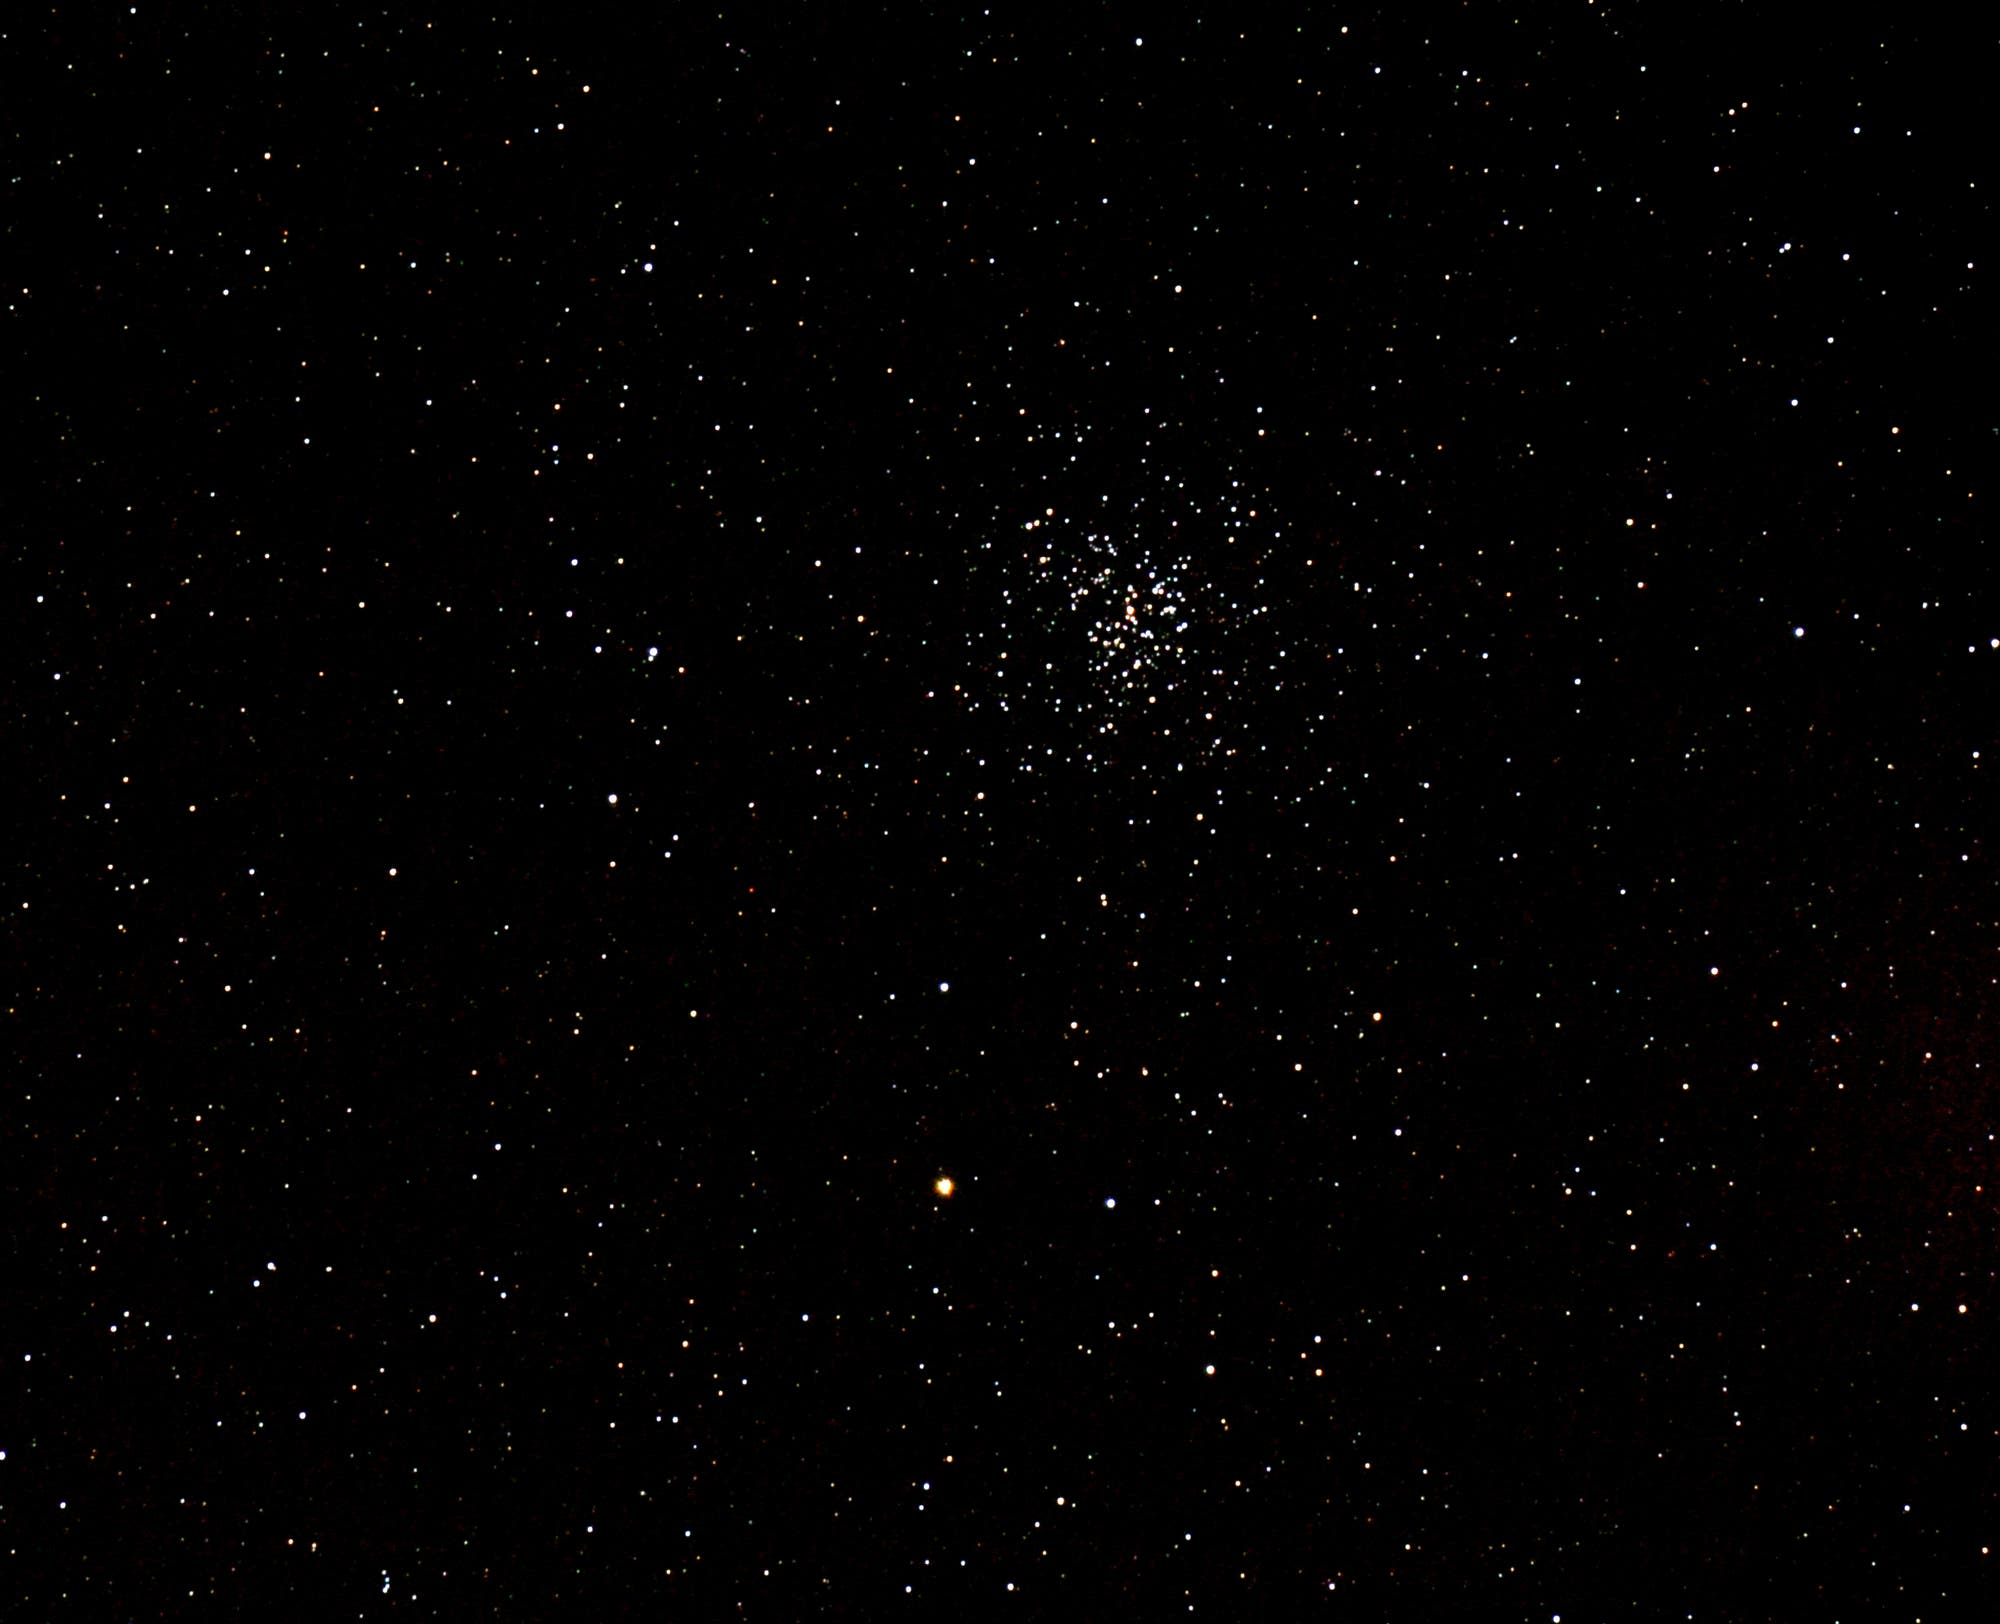 Messier 37